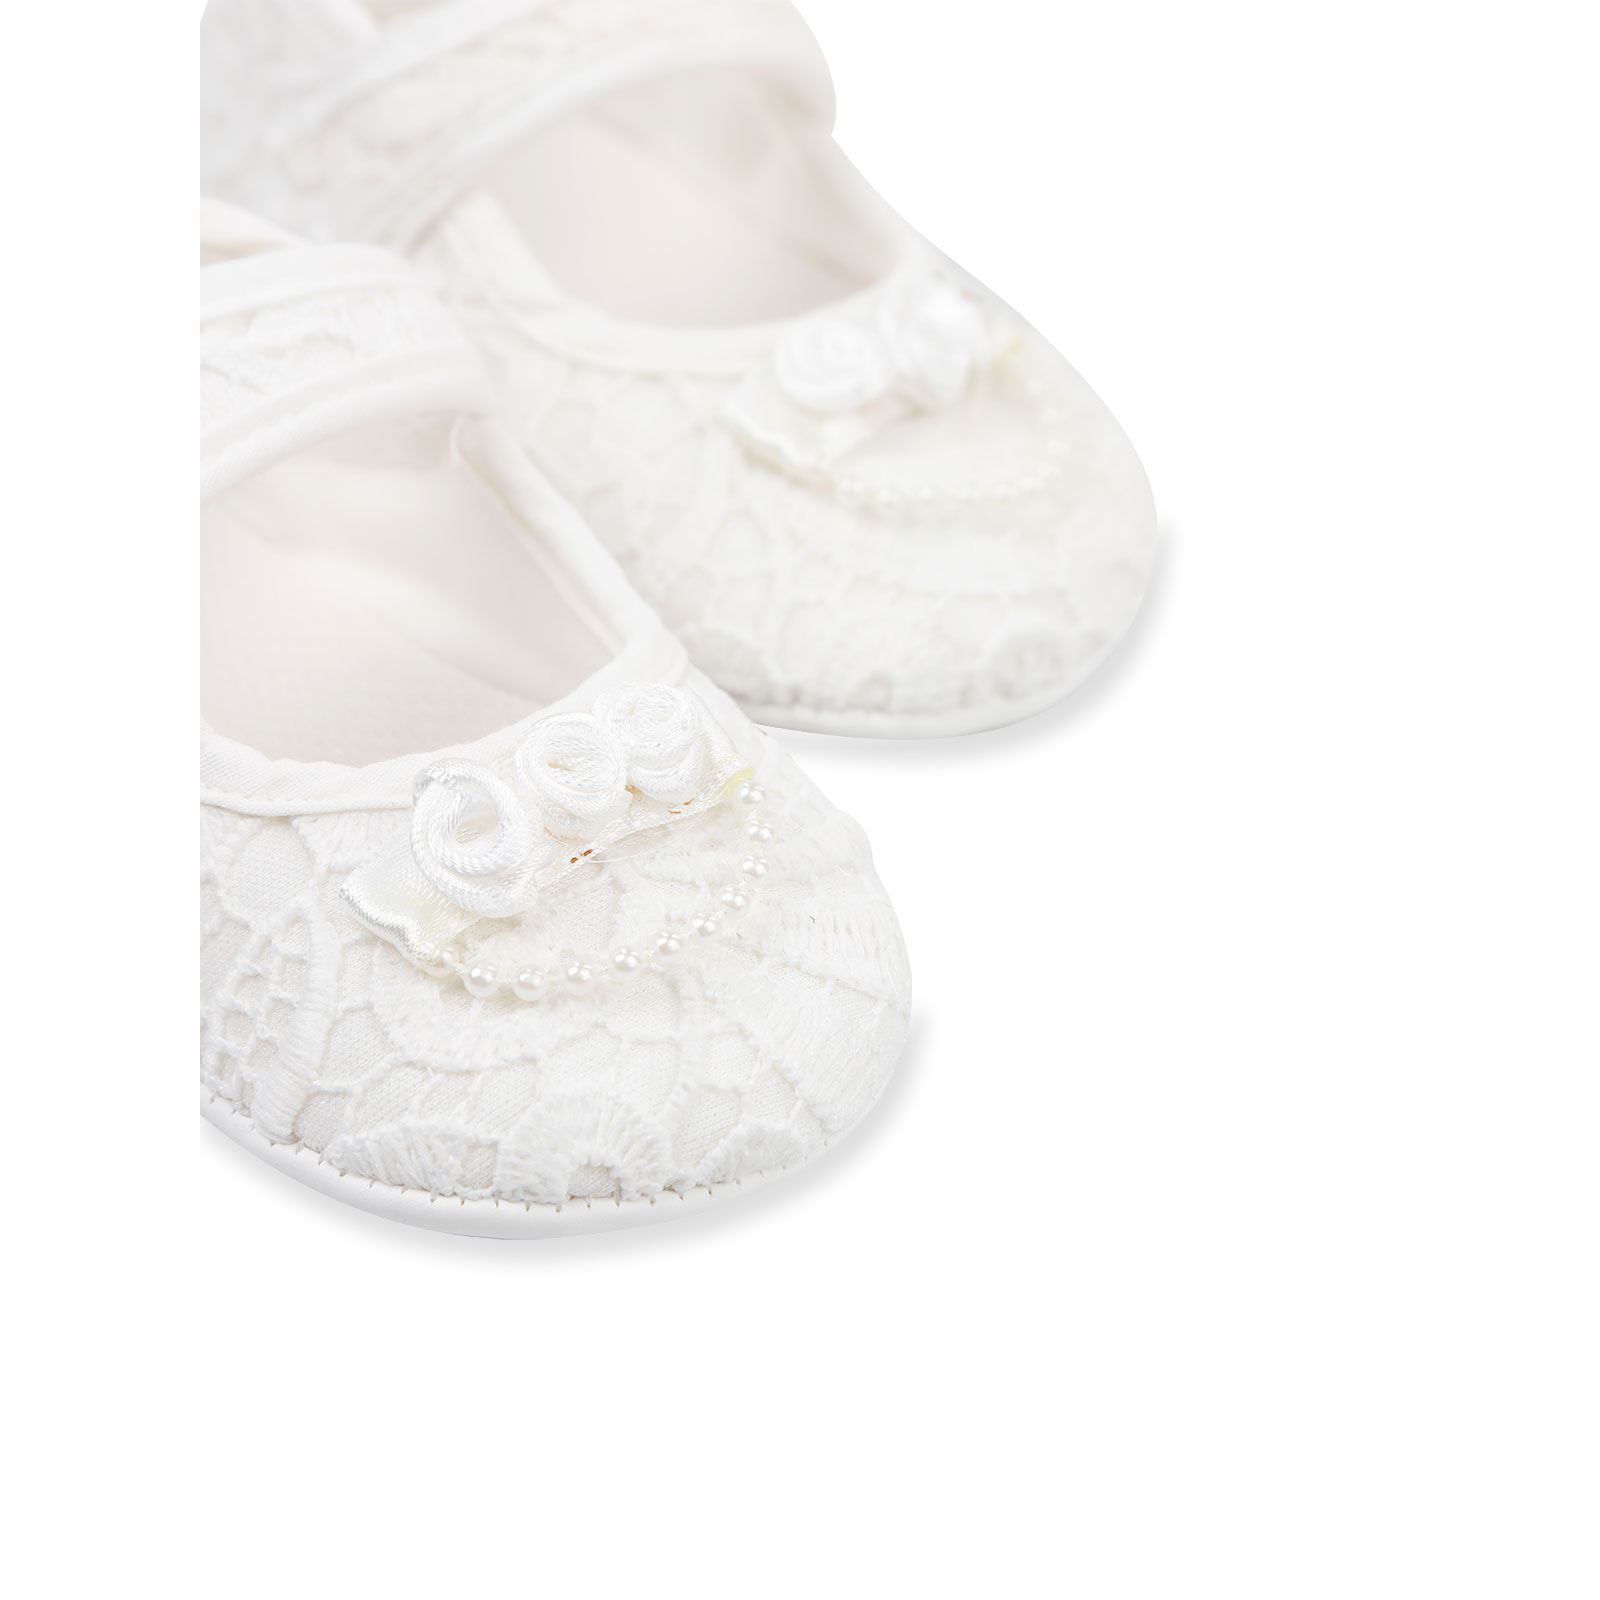 Civil Baby Kız Bebek Patik Ayakkabı 18-19 Numara Ekru